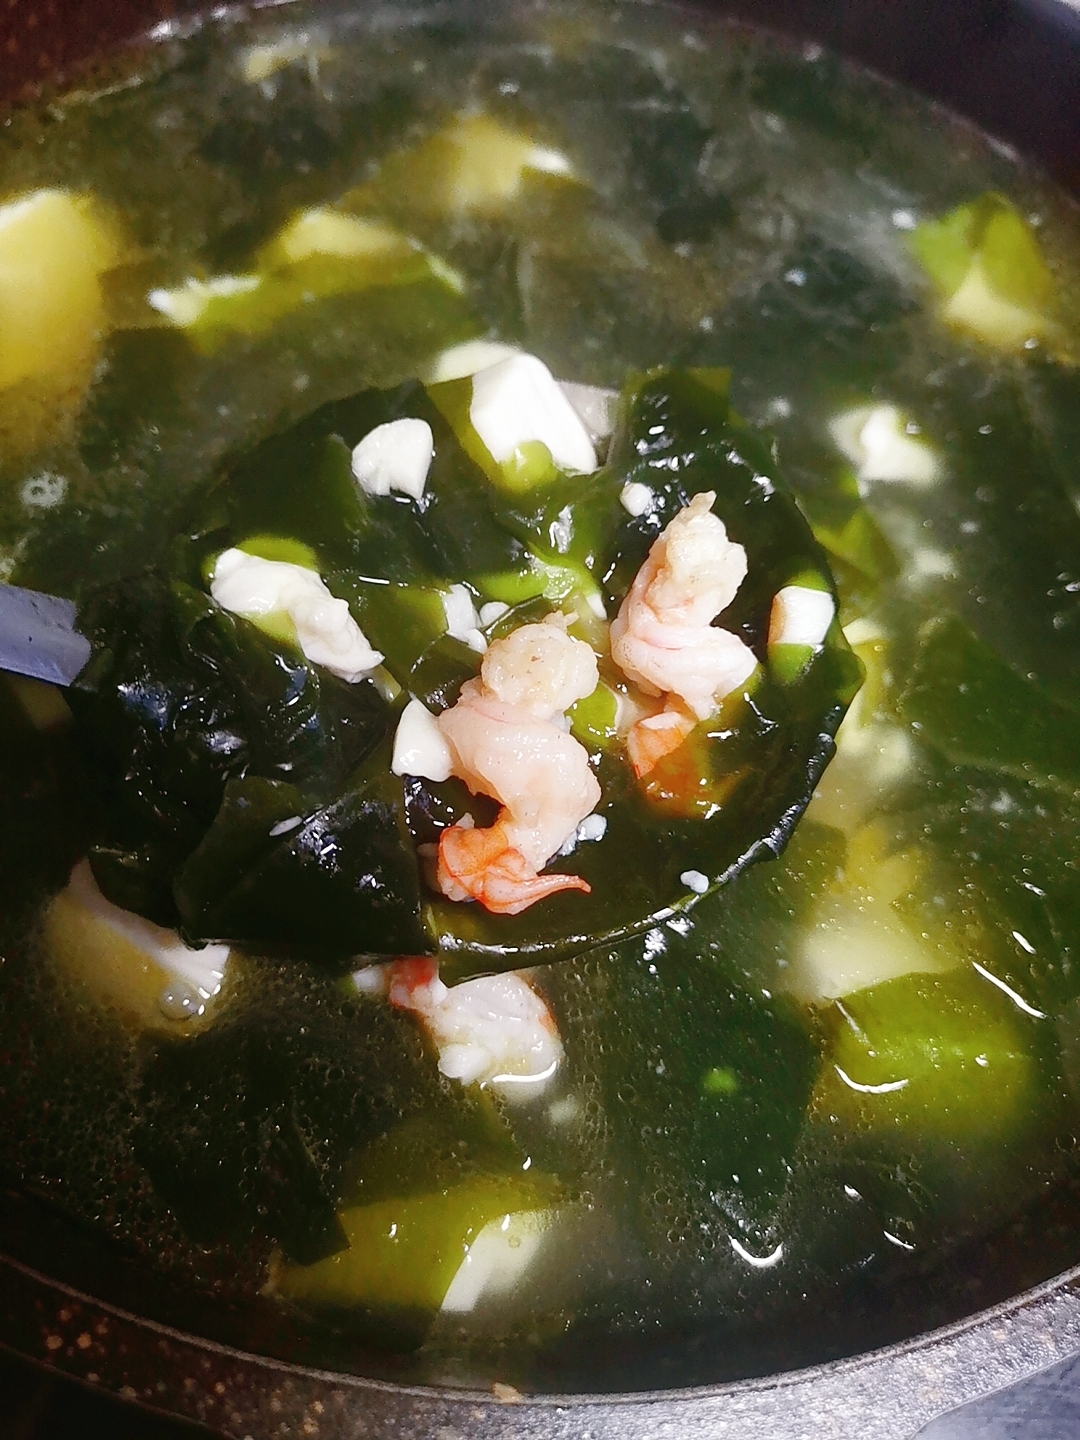 虾仁豆腐海带汤